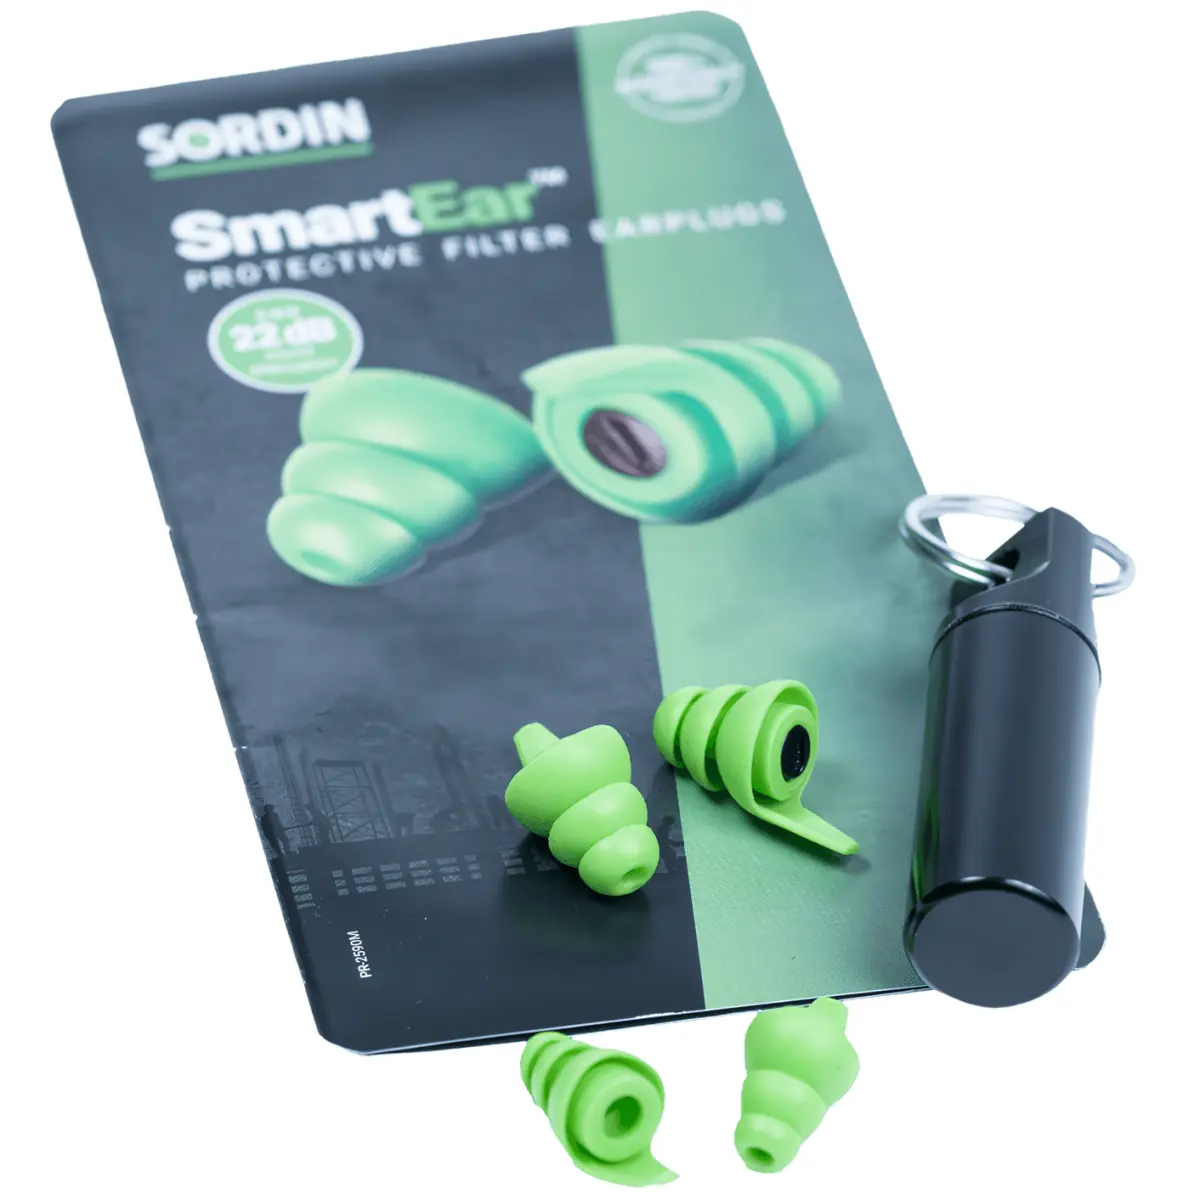 Sordin SmartEar - Bouchons antibruit - 27171-08-S - avec packaging et contenu - unboxing